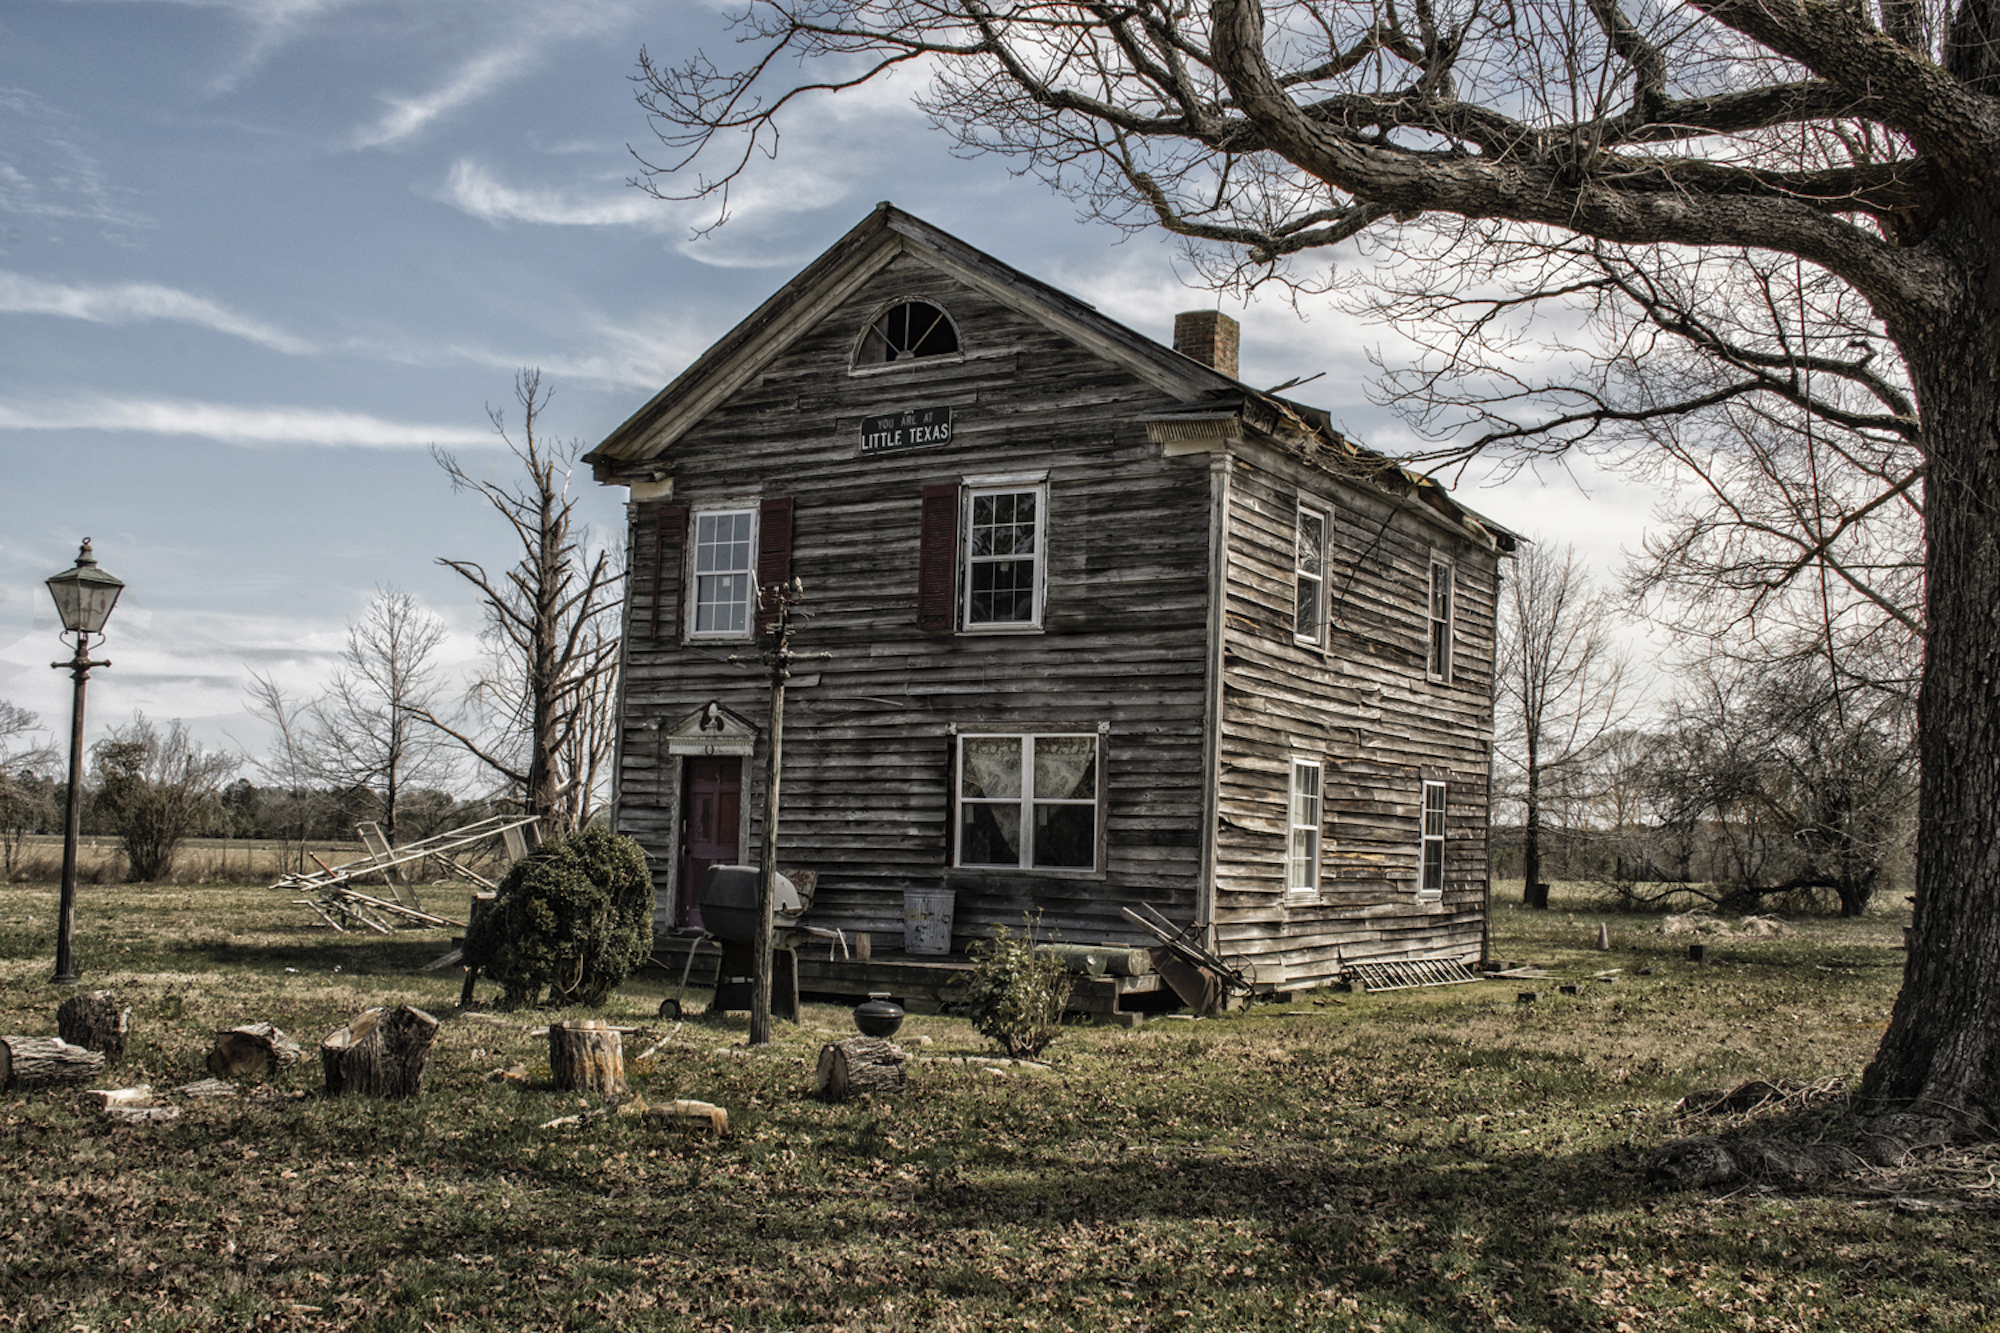 Casa abandonada, ya demolida, en Little Texas, Virginia, fotografiada en marzo de 2021. (Cortesía de Michael Wade)